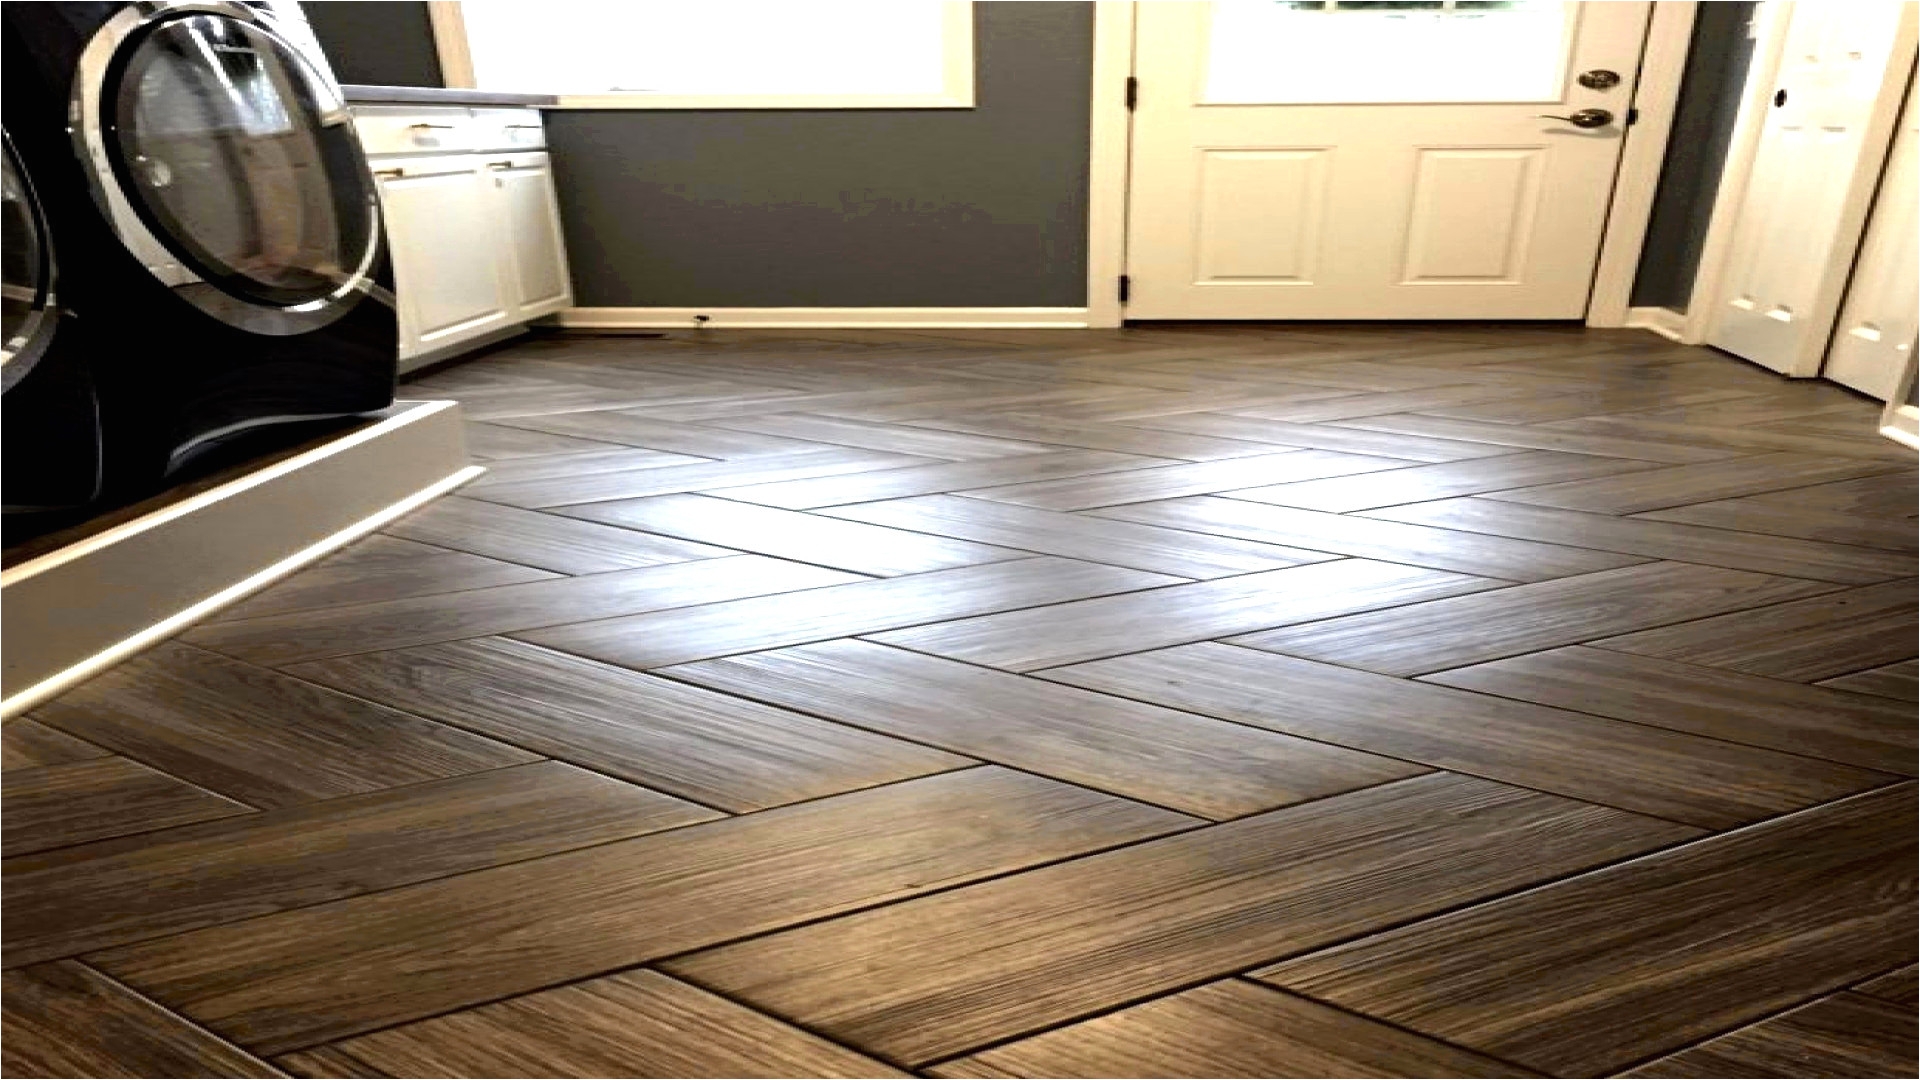 pictures of wood tile floors elegant wood floor contractors wooden flooring price floor plan ideas of